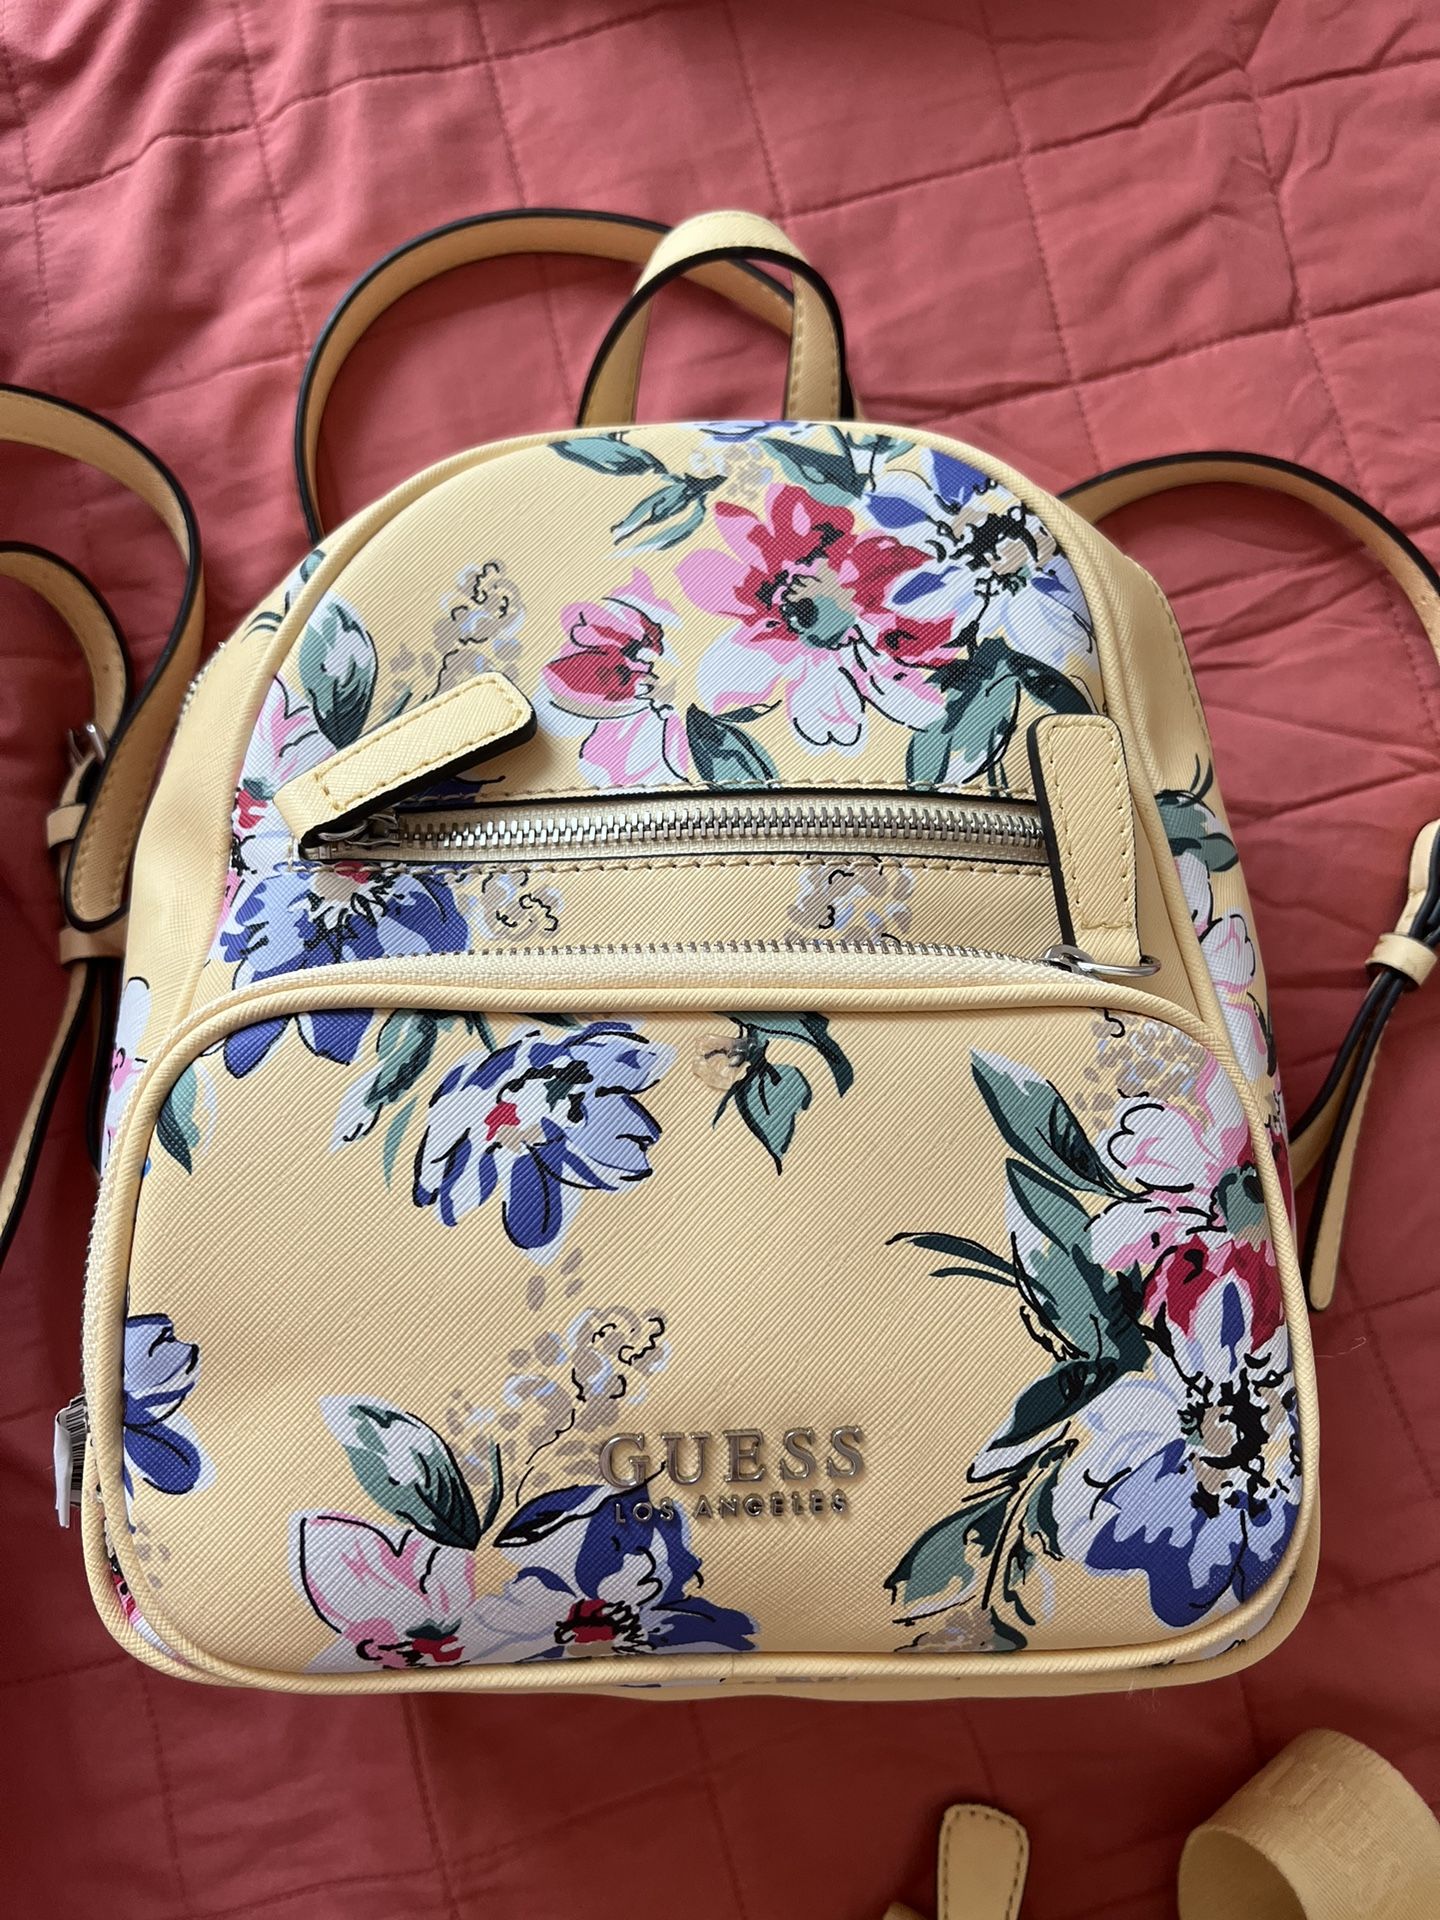 GUESS Backpack Floral Bag & Handbag for Women